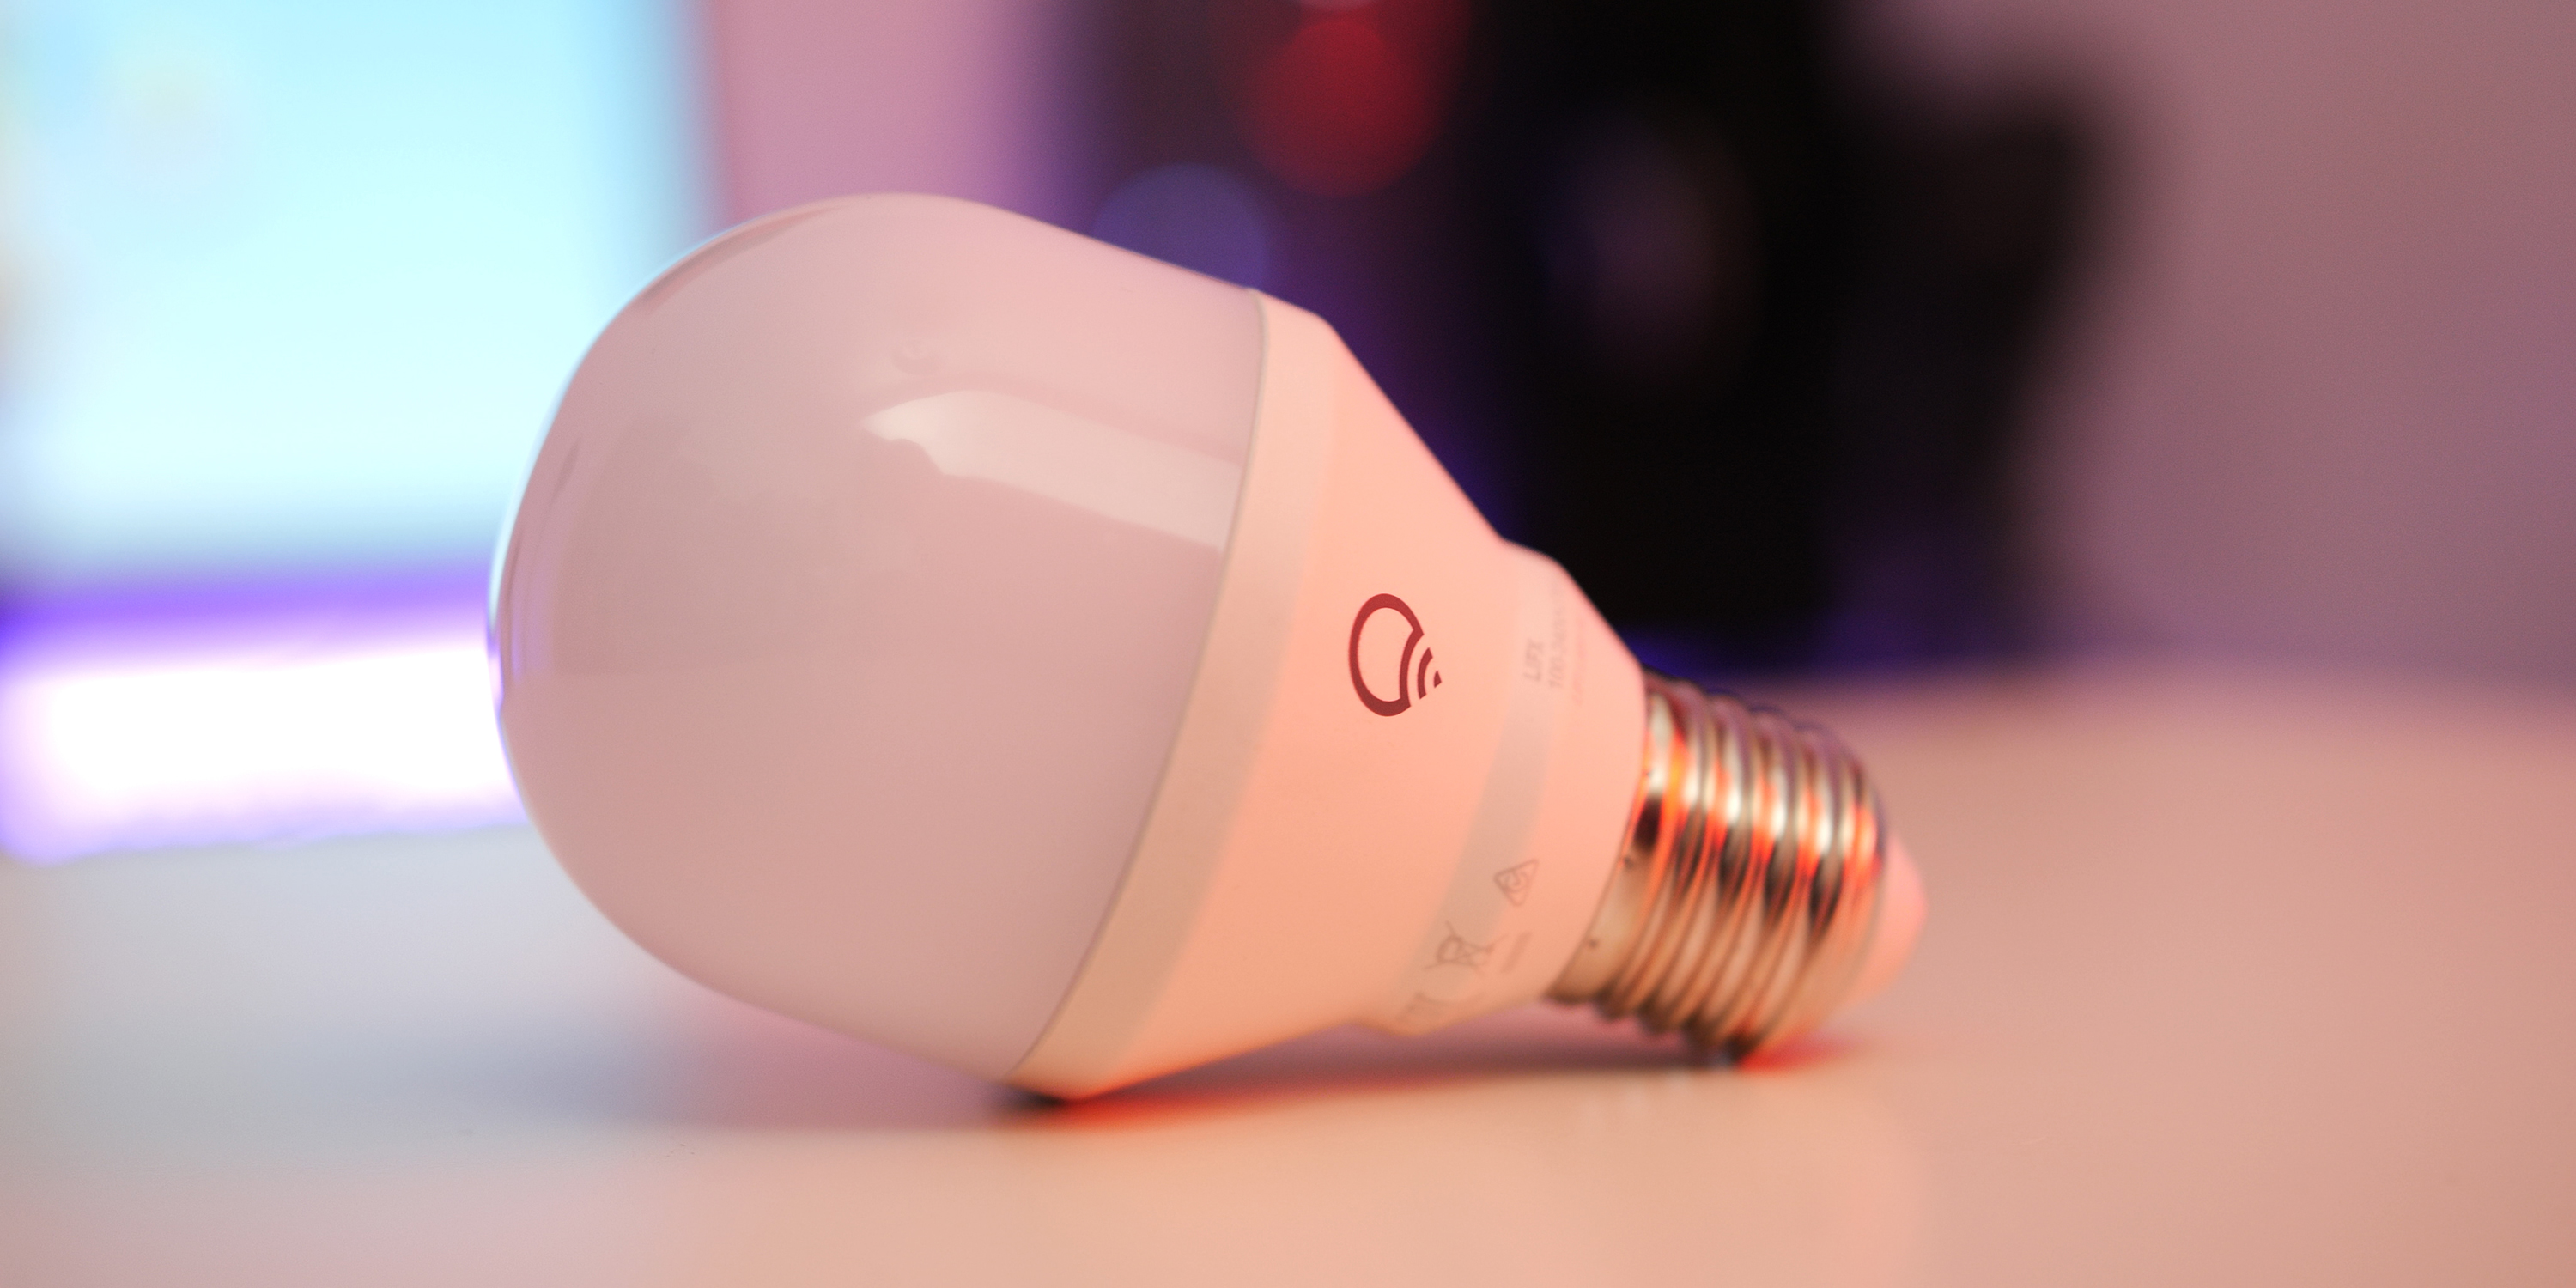 download lifx smart bulb